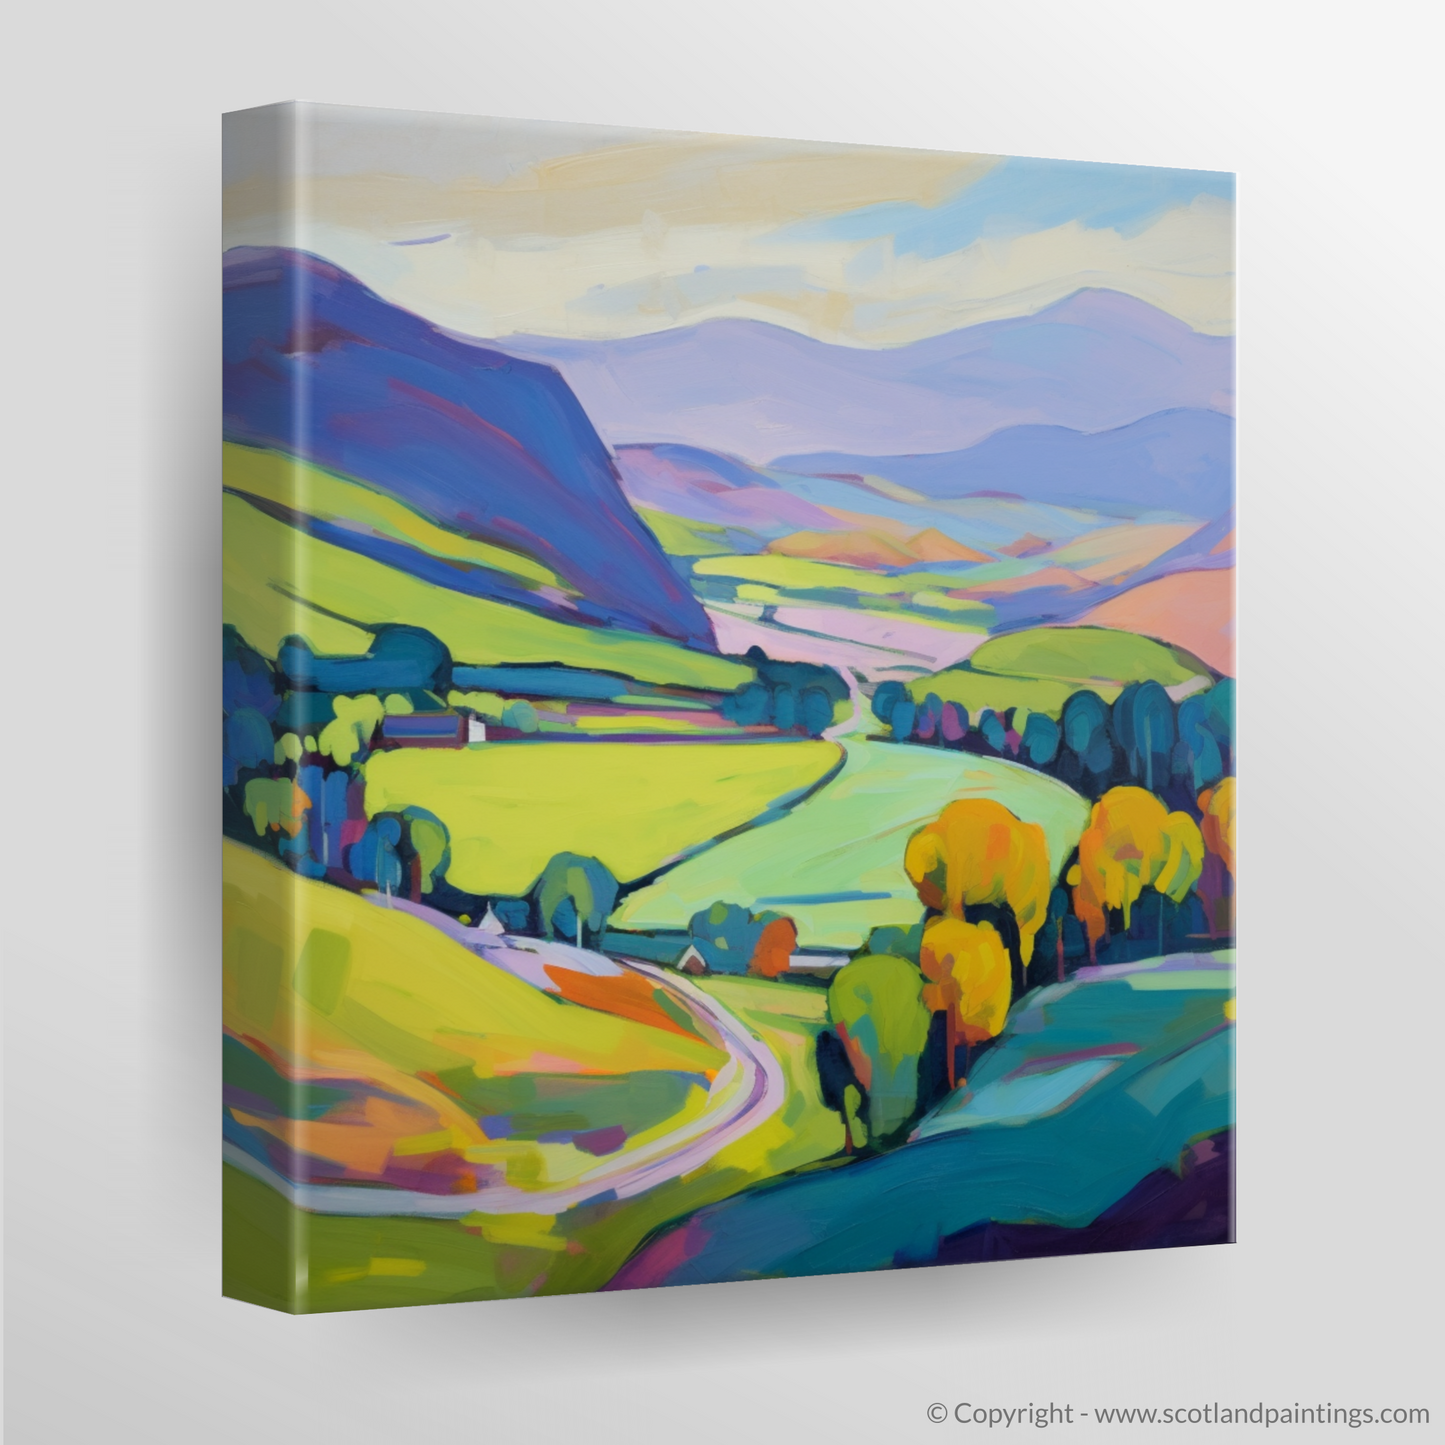 Summer Splendour in Glenlivet: A Cubist Ode to the Scottish Highlands